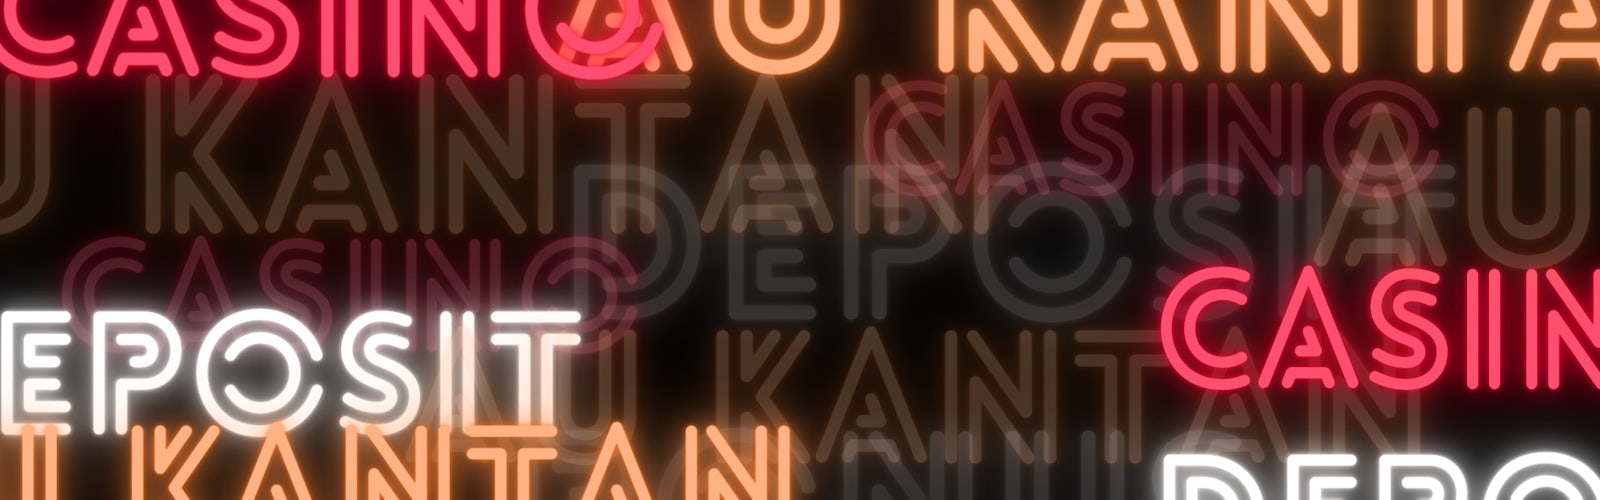 黒い背景にネオン系のフォントで、「Casino Deposit Au kantan」とバラバラに描かれている様子